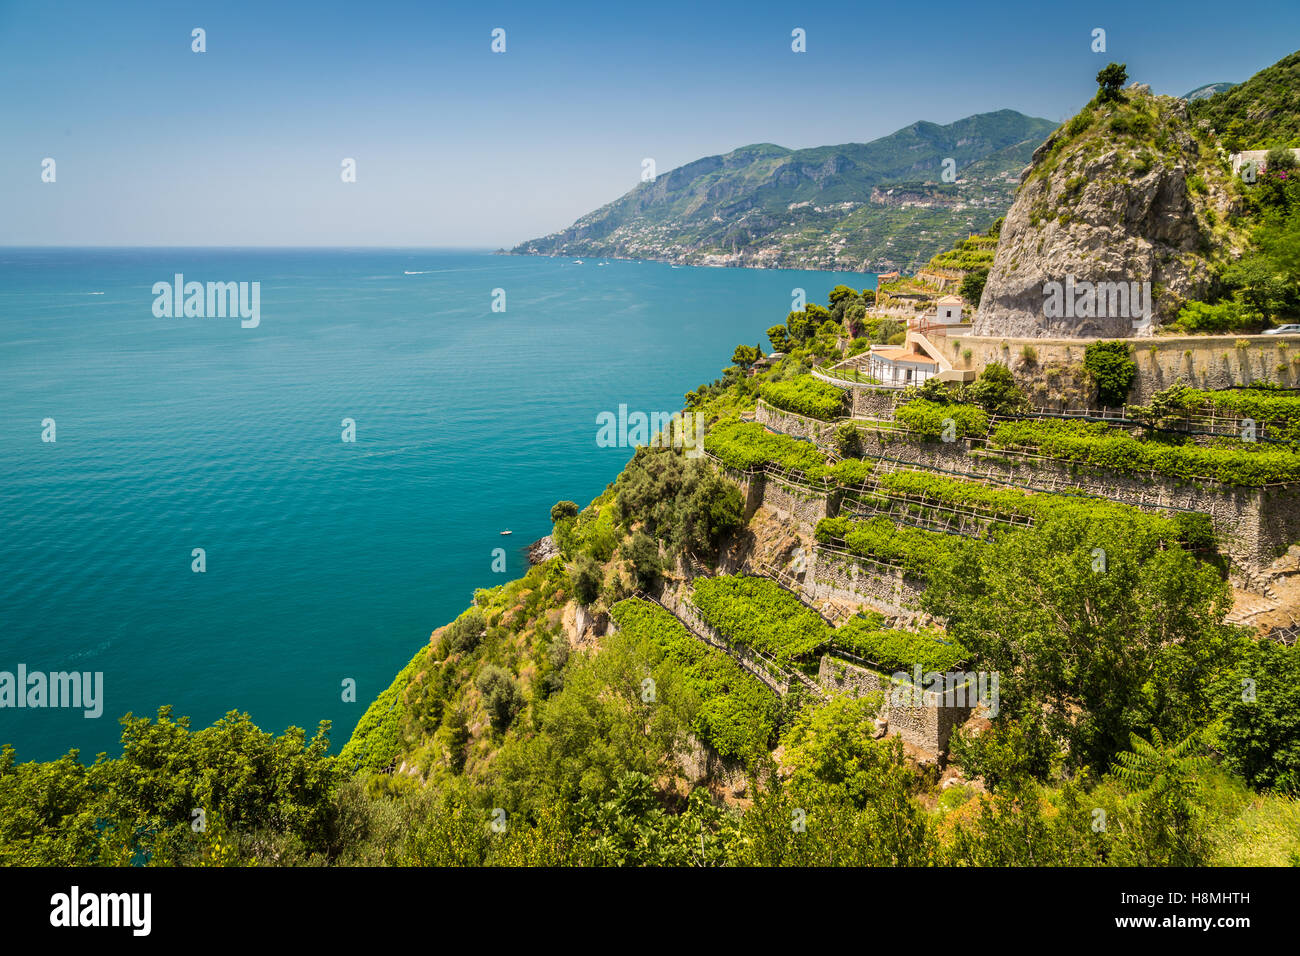 Immagine panoramica-vista da cartolina famosa Costiera Amalfitana con vigneti e il Golfo di Salerno in una bella giornata di sole con cielo blu in estate, Italia Foto Stock